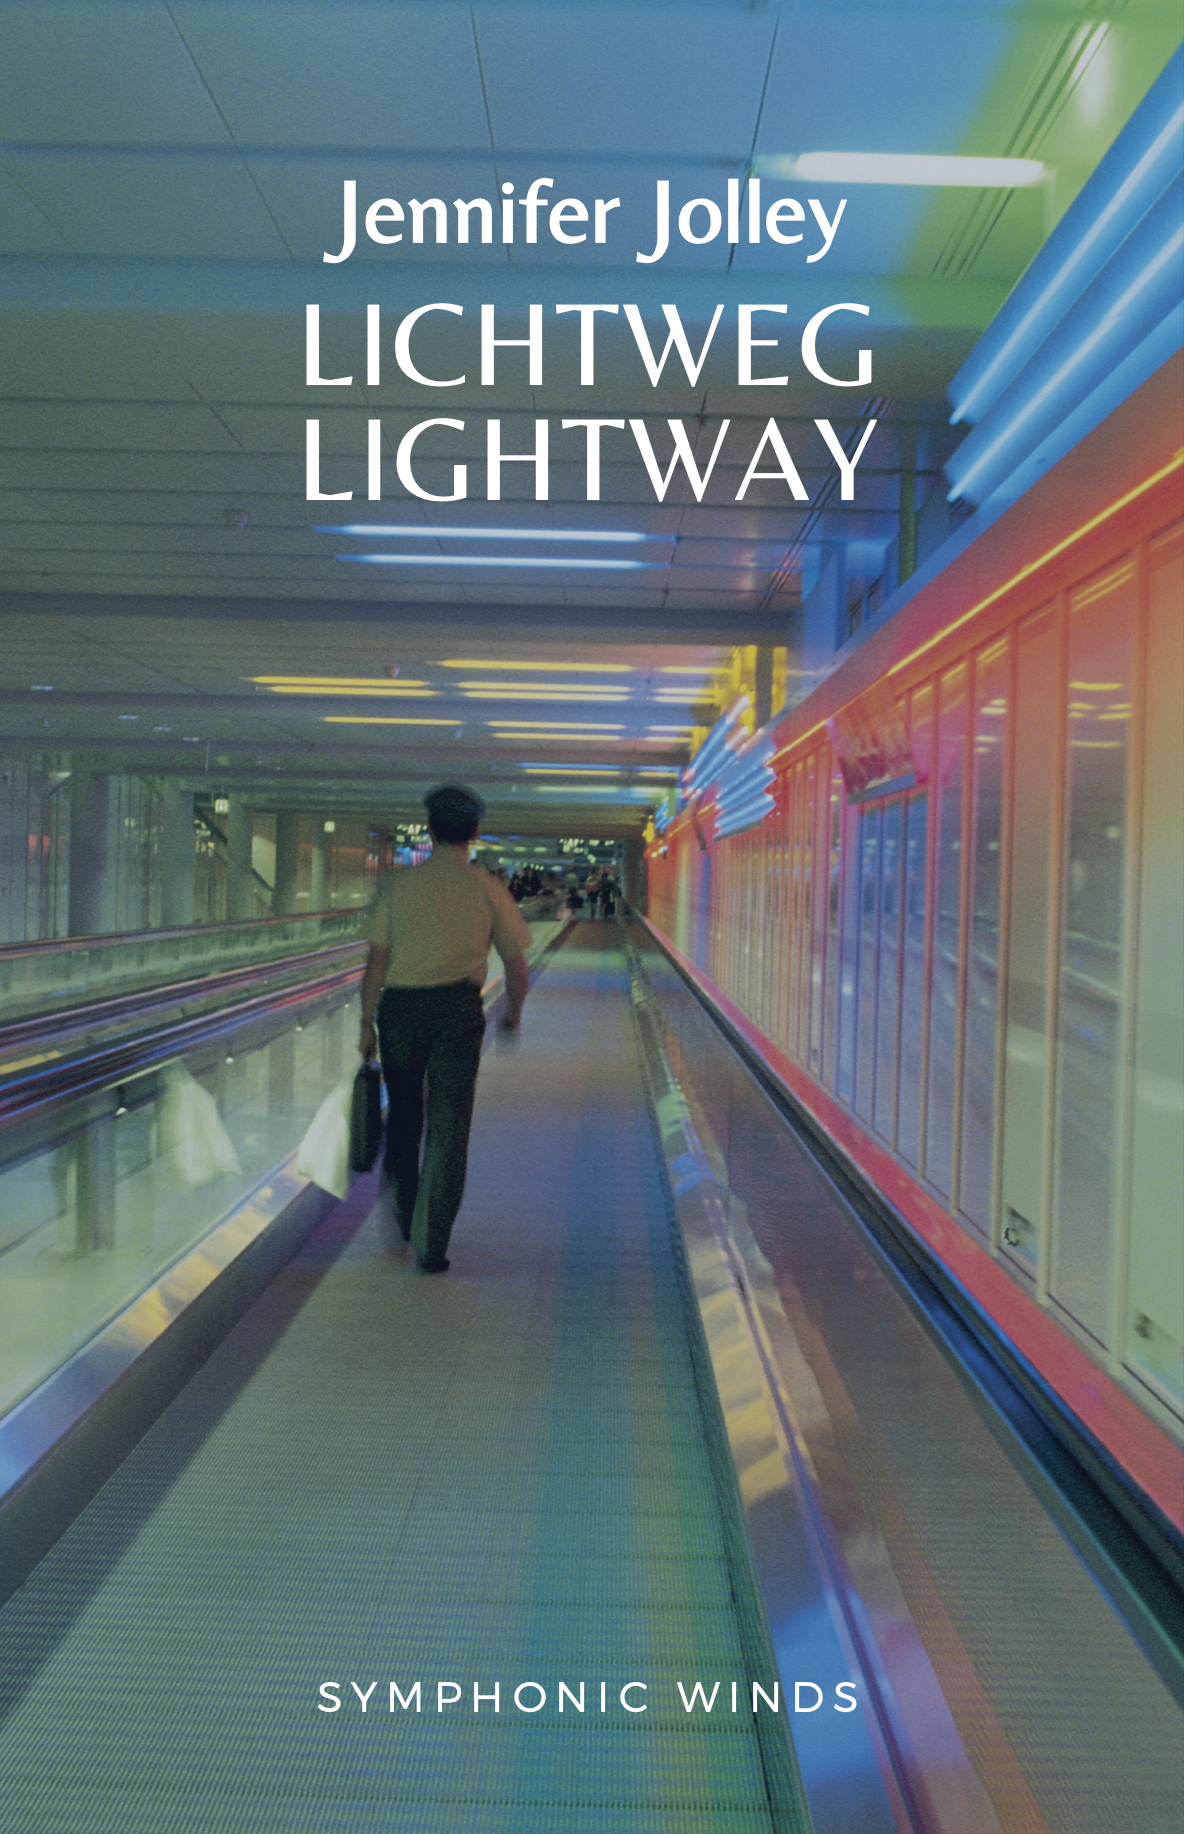 Lichtweg/Lightway by Jennifer Jolley